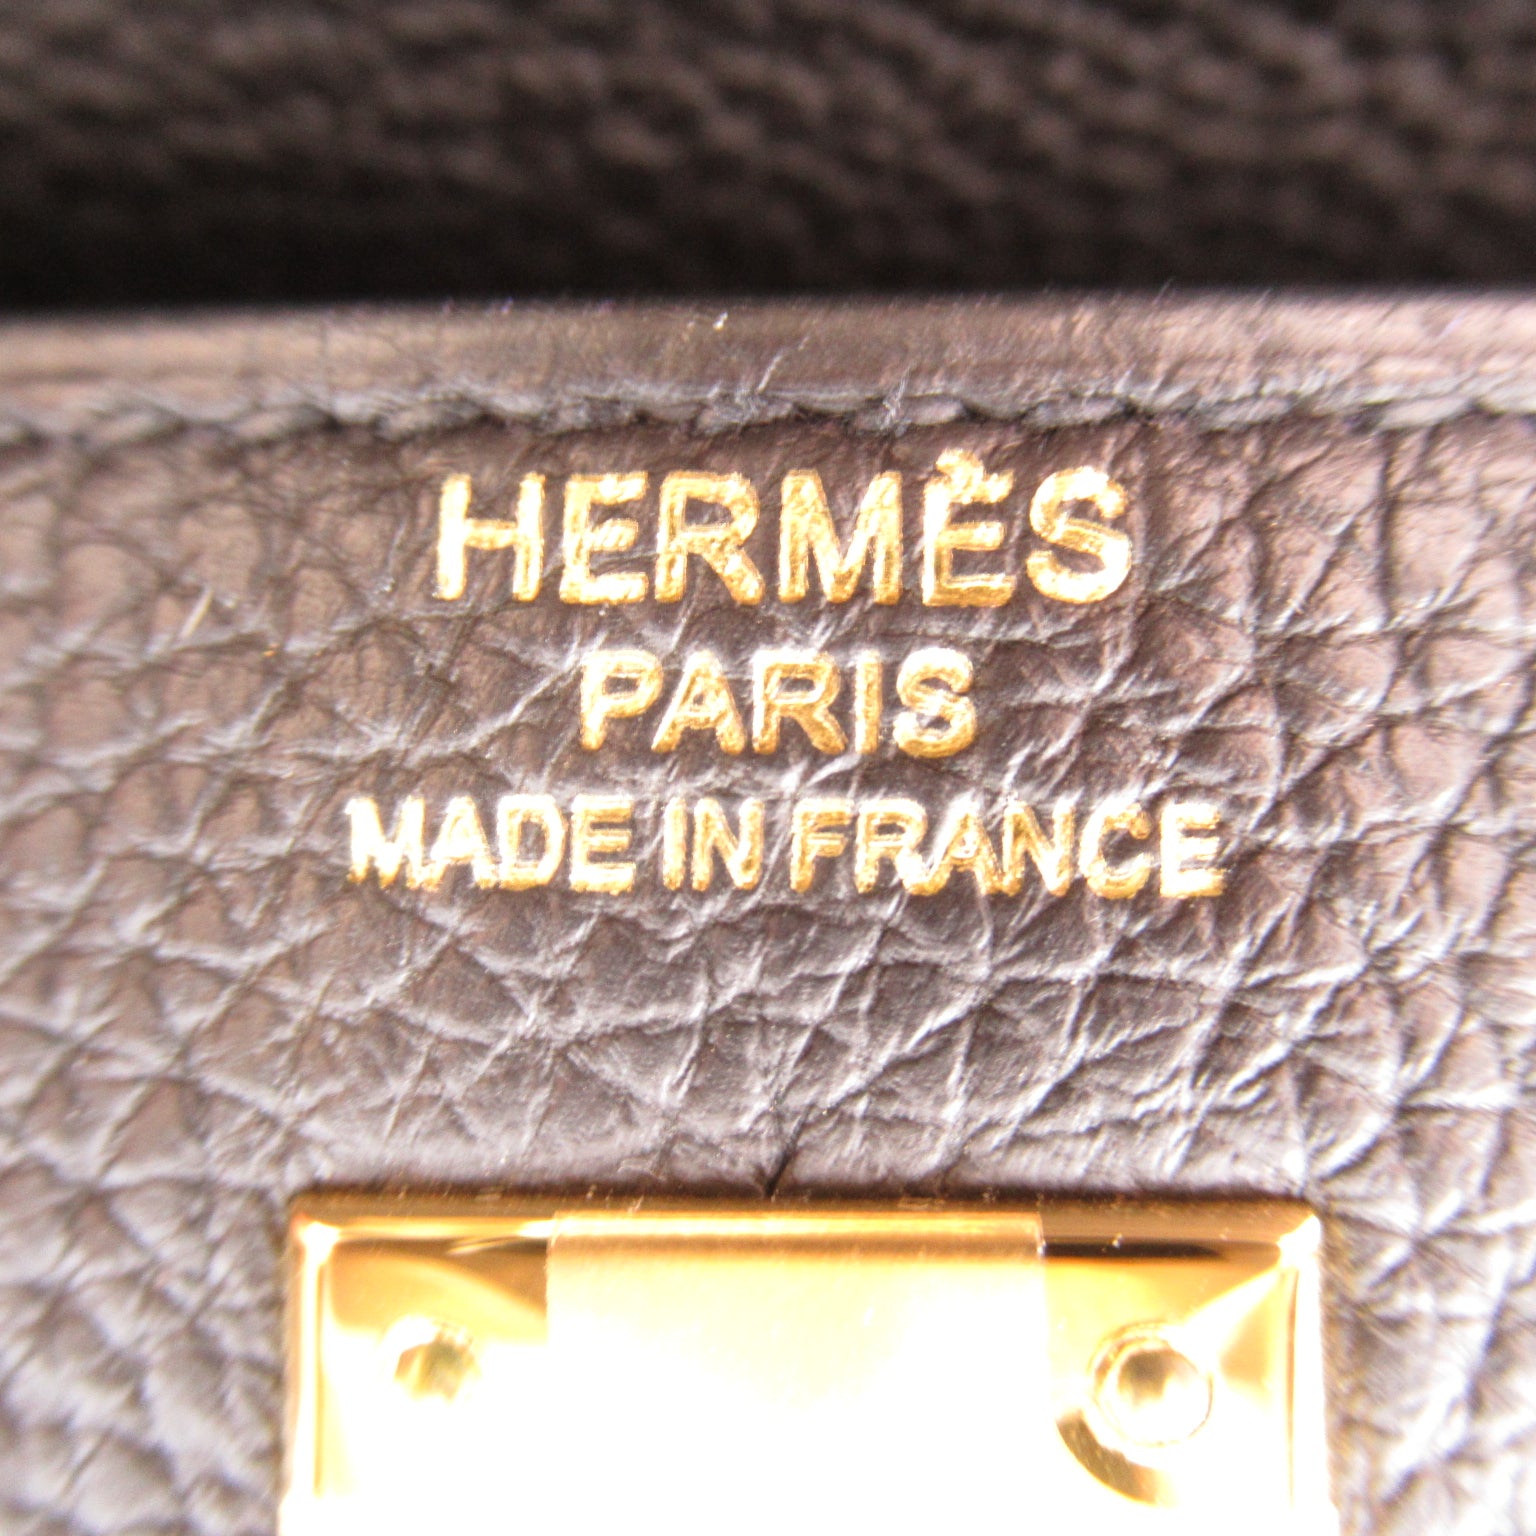 Hermes Kelly 25 Black Handbag Handbag Handbag TOGO LADY BLACK